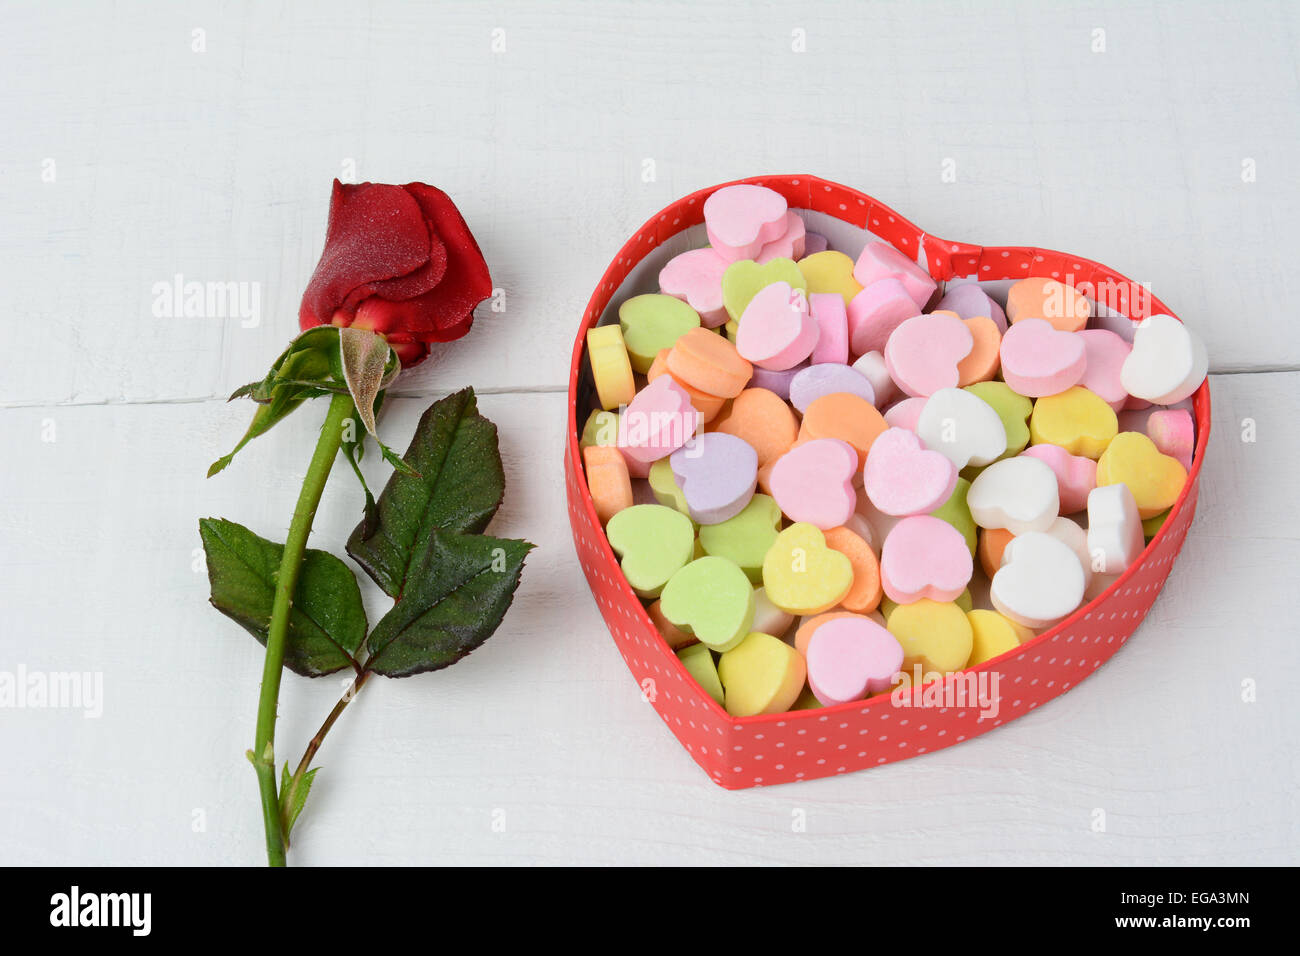 Une boîte de bonbons coeur de la Saint-Valentin et une rose rouge sur une table de bois blanc. La rose est embué et les bonbons sont pastel Banque D'Images